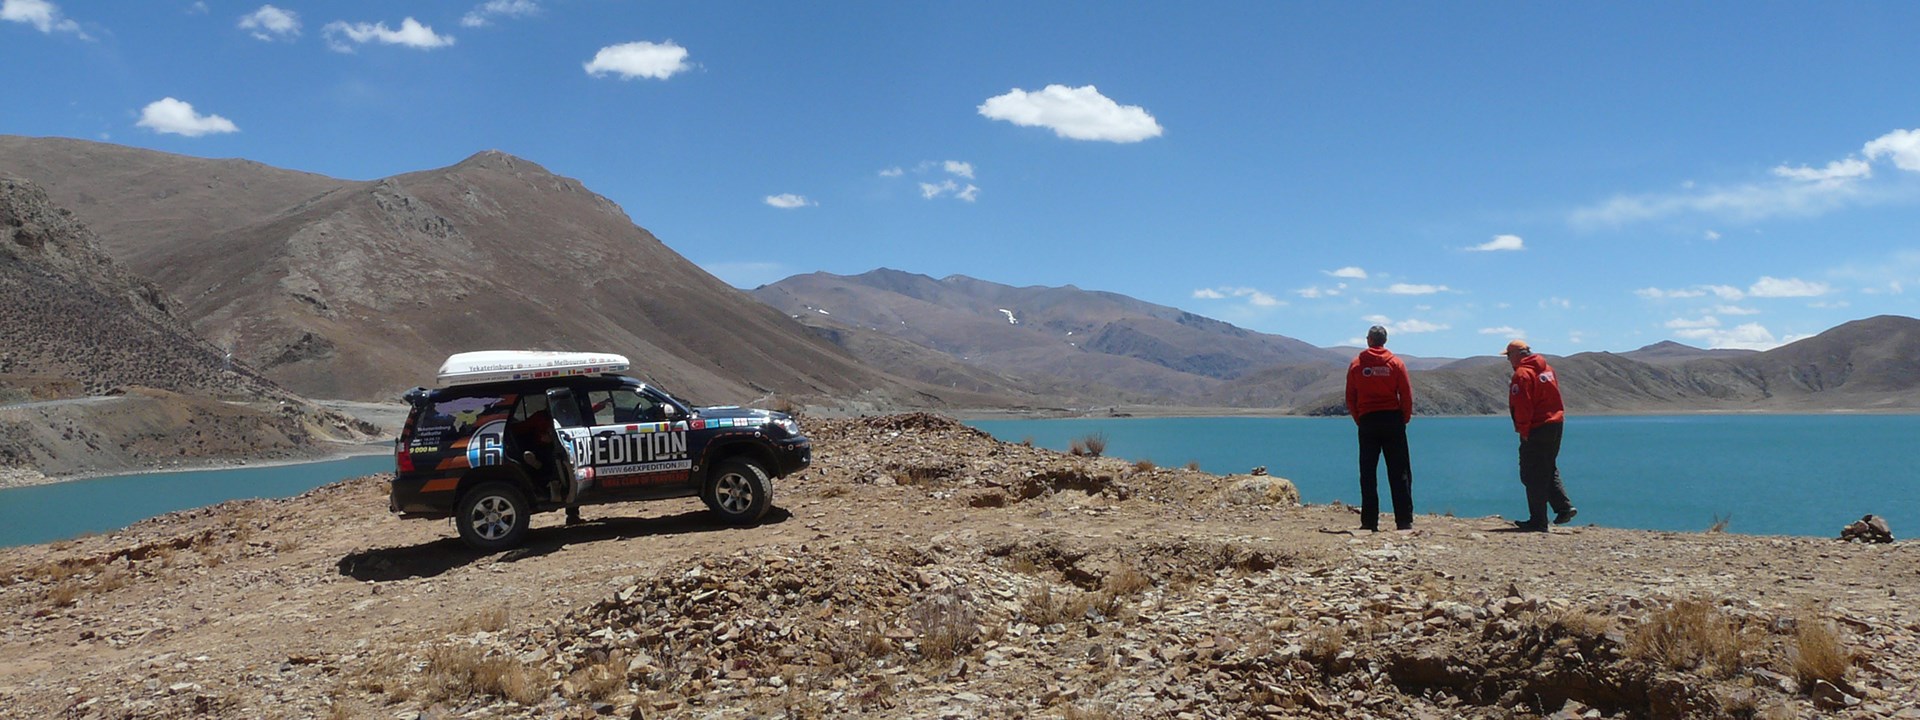 Die erste Selbstfahrerreise durch Tibet im Jahr 2013 fand am 23.04. statt